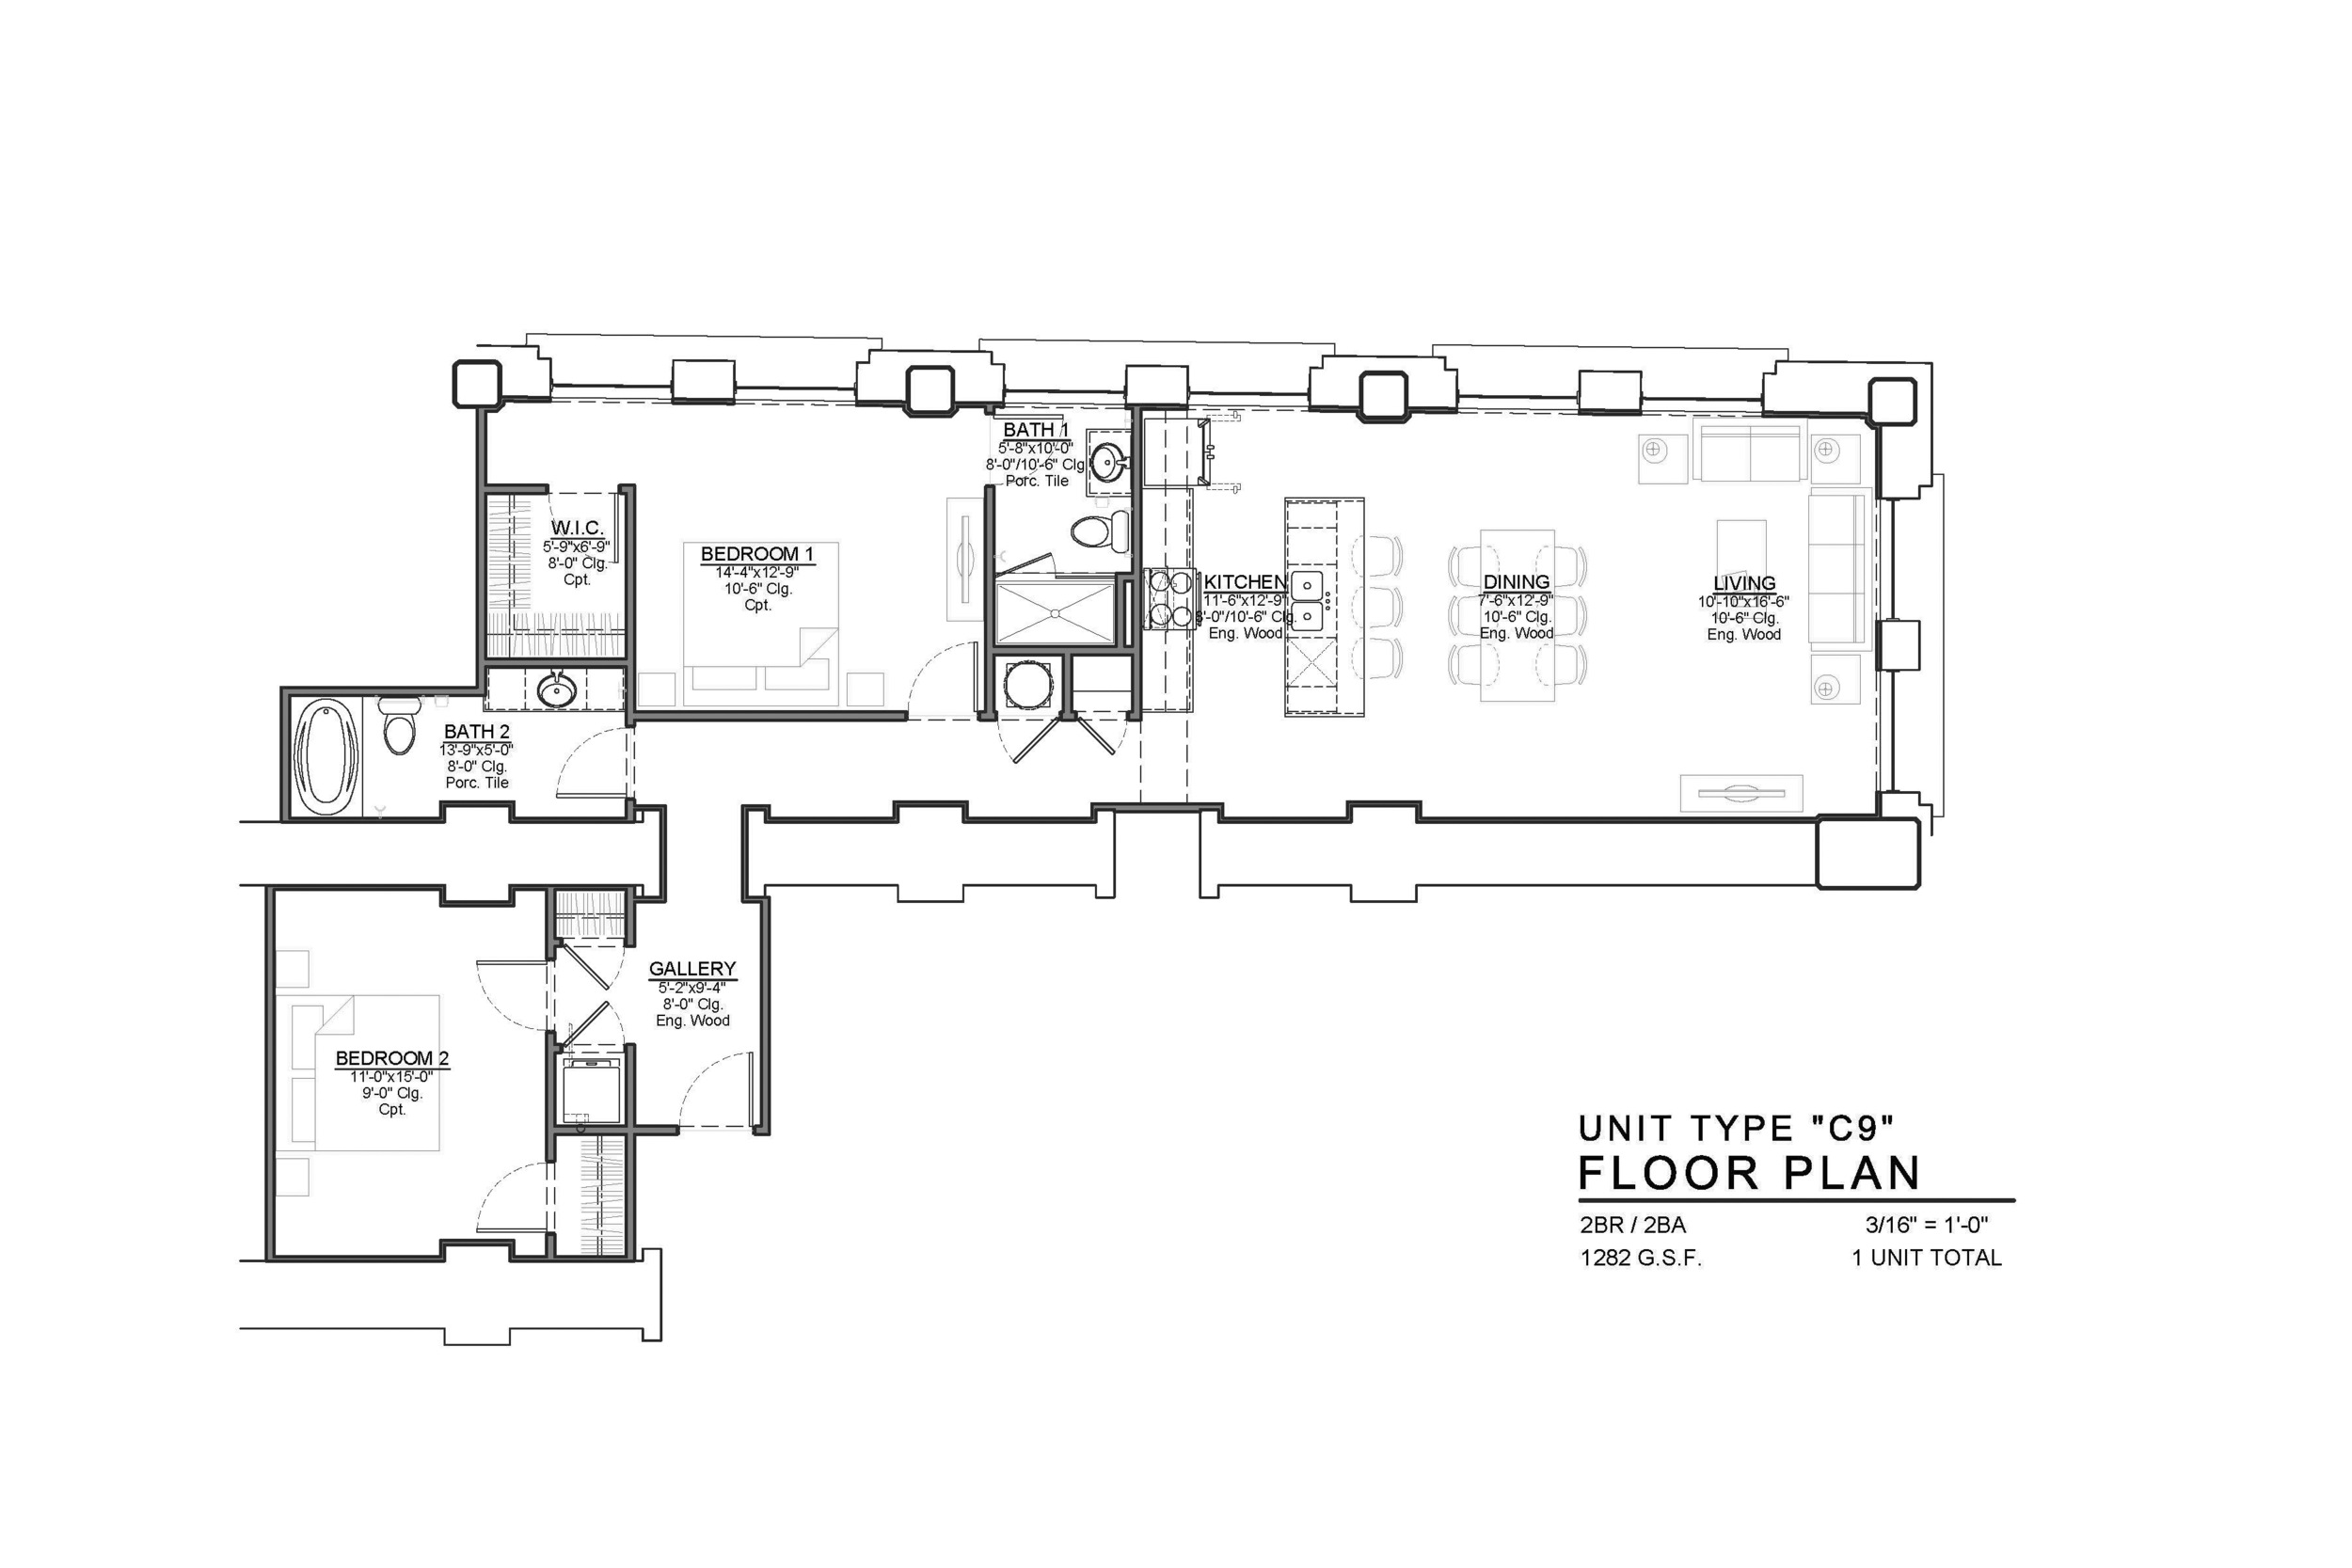 C9 FLOOR PLAN: 2 BEDROOM / 2 BATH